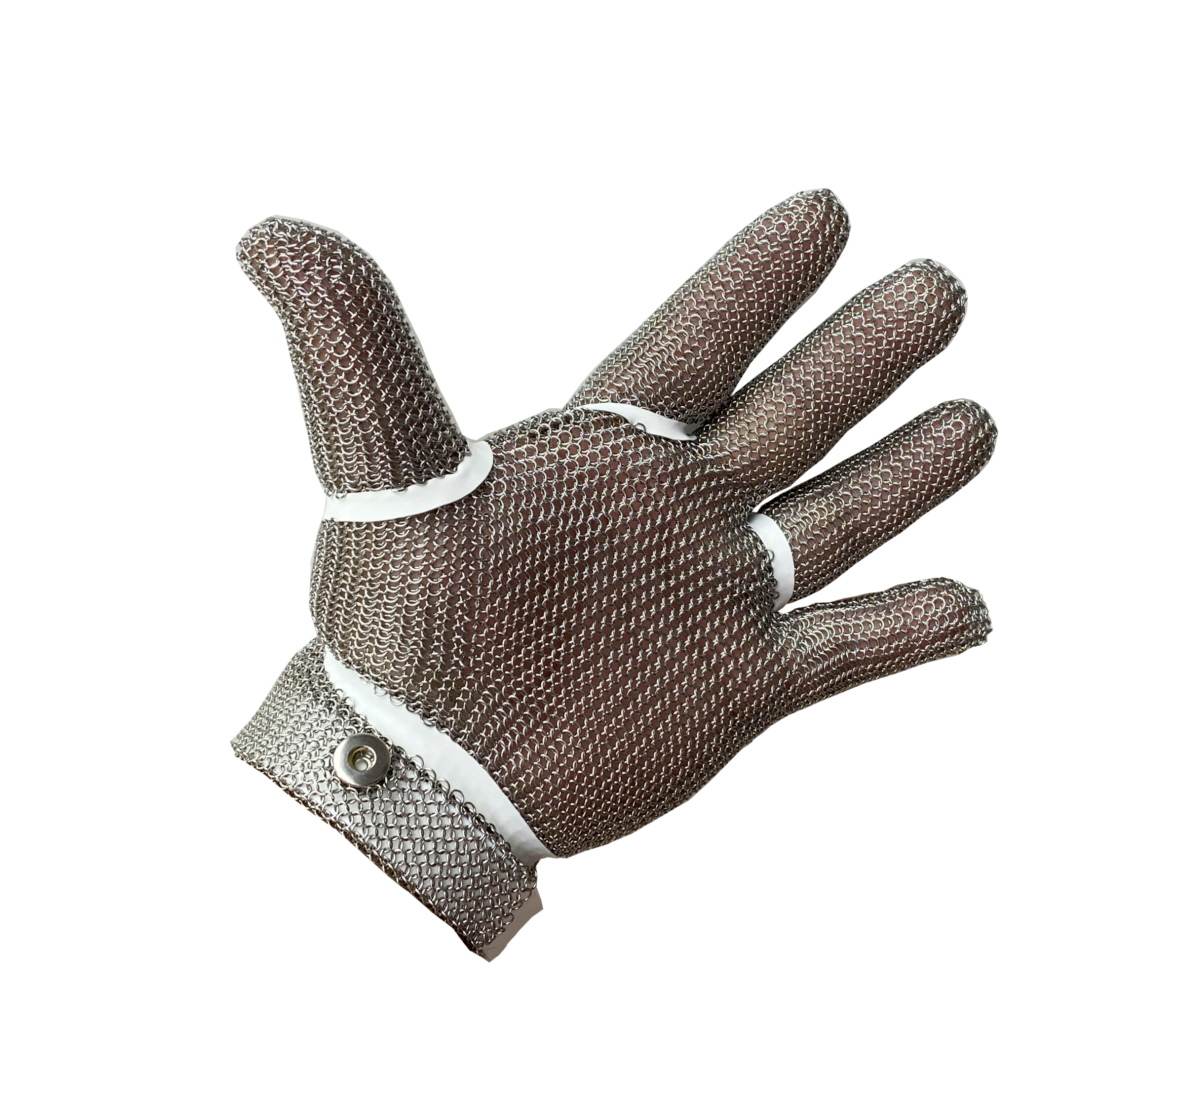 20 Stück Handschuhspanner / Fingerlinge für Stechhandschuh Blau